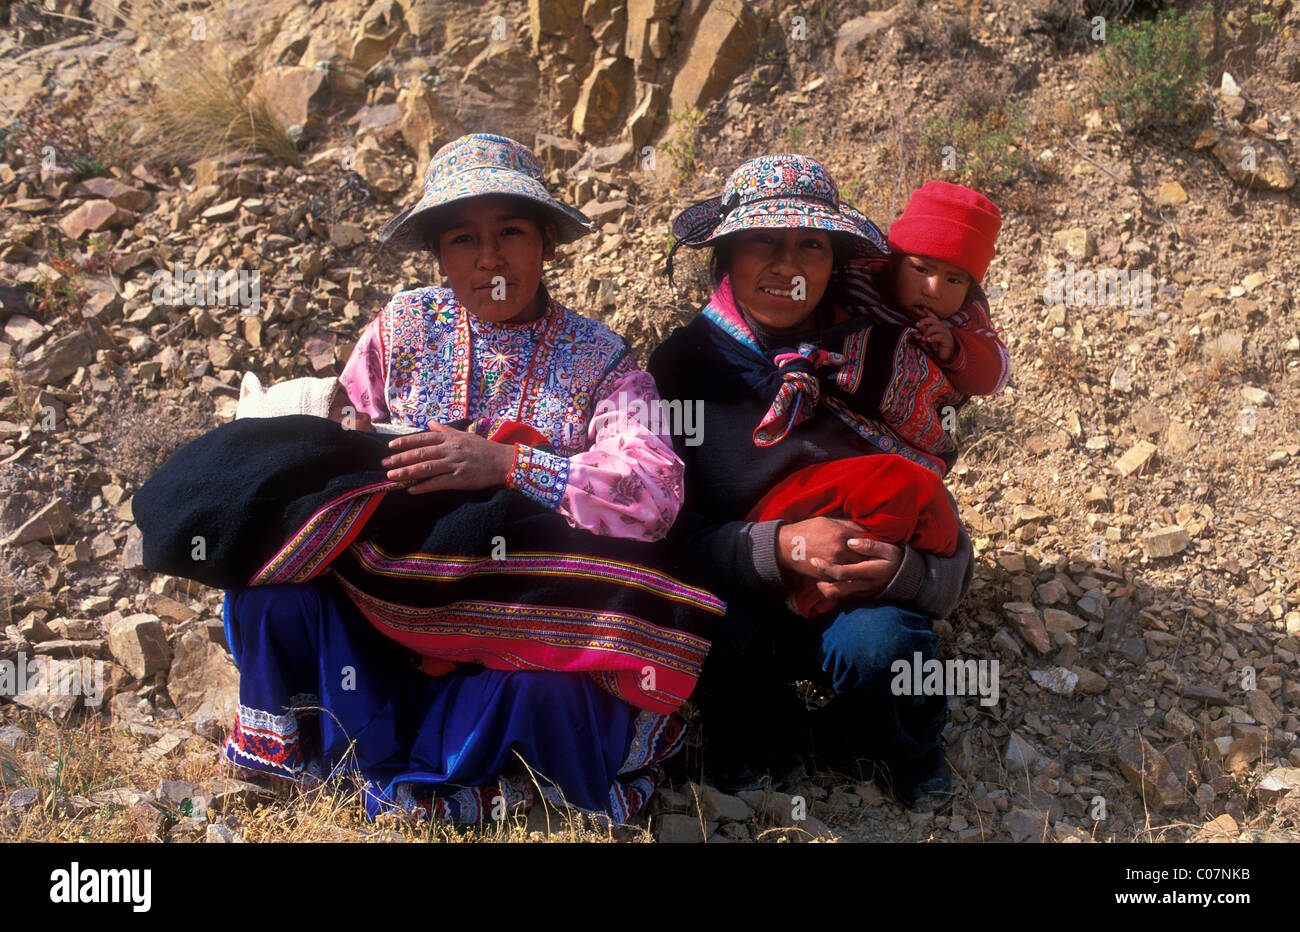 Frauen der indigenen Quechua-Bevölkerung und ihre Kinder in Tracht, Colca Canon, Peru, Südamerika Stockfoto